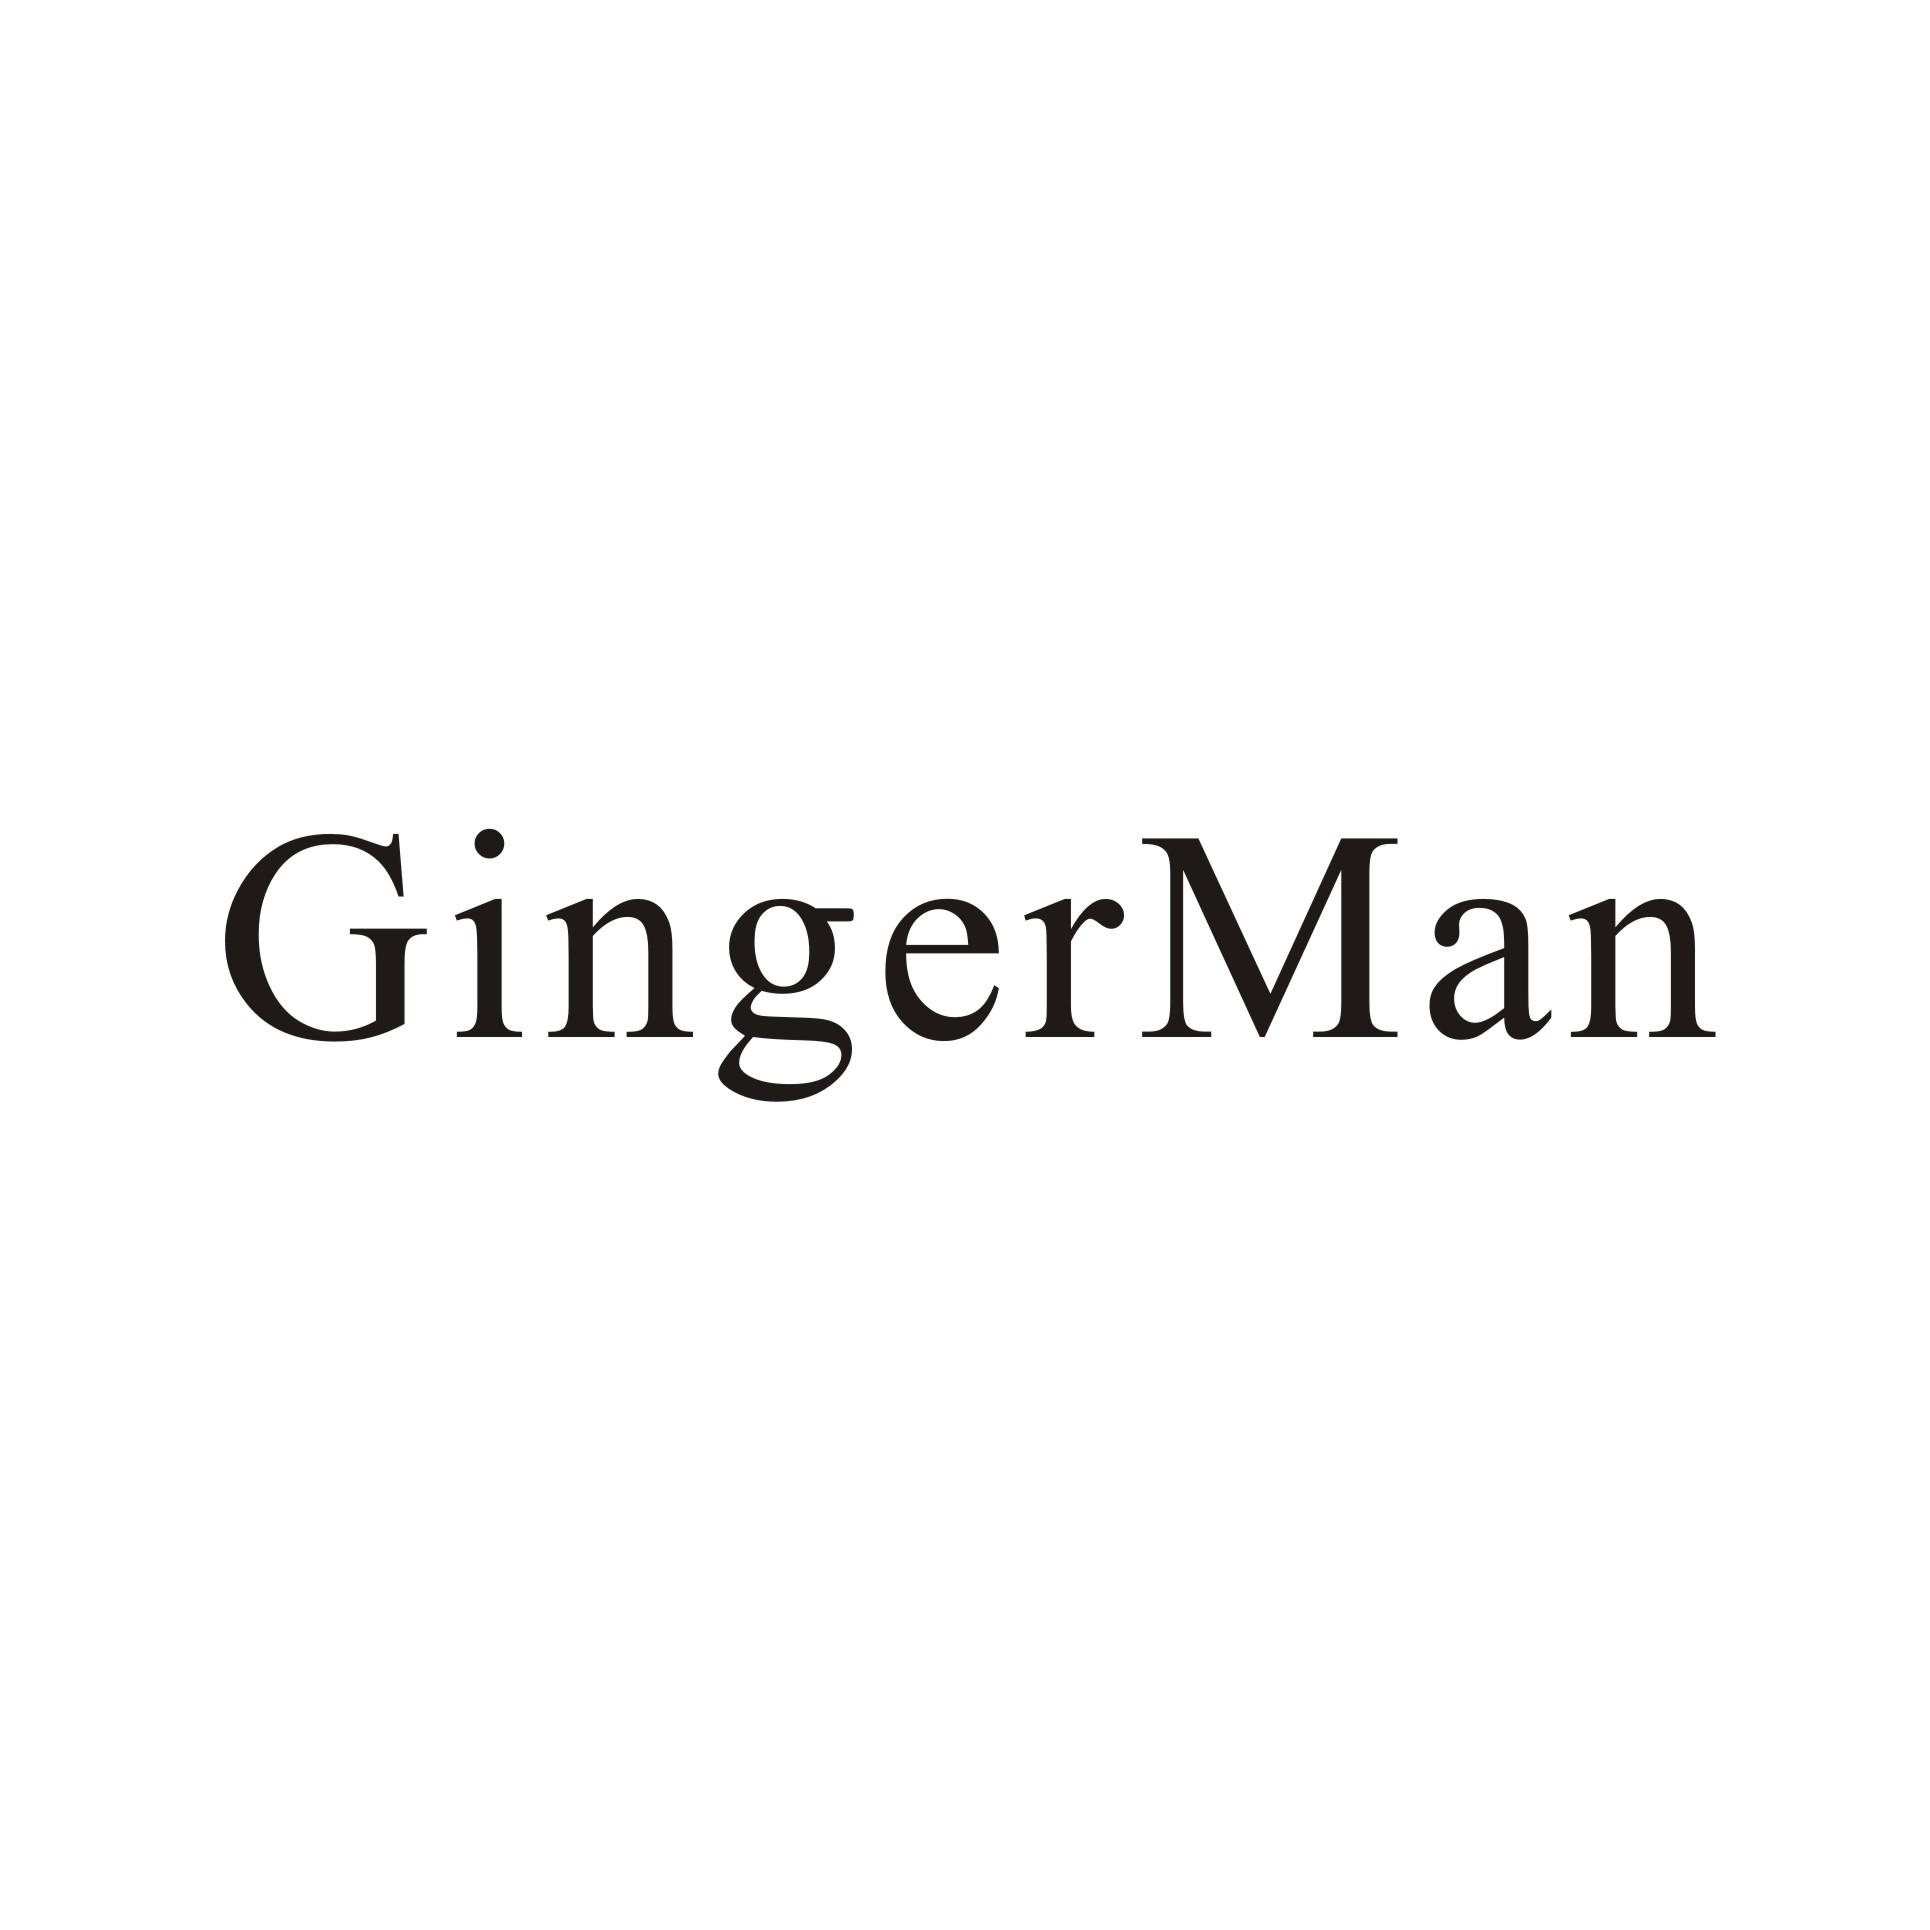 gingerman